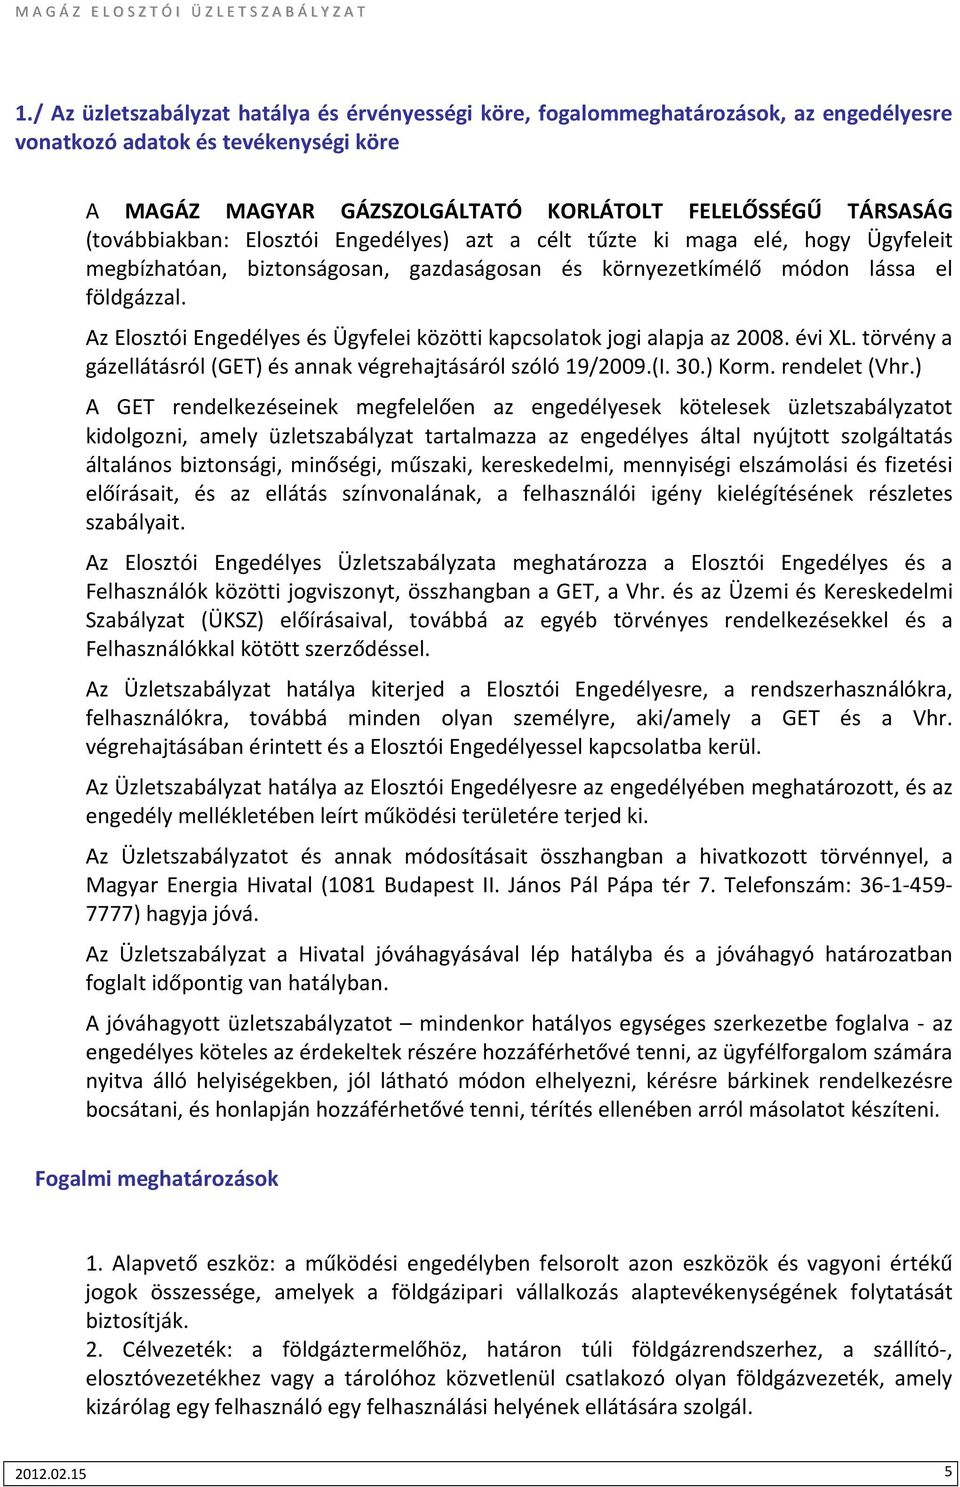 Az Elosztói Engedélyes és Ügyfelei közötti kapcsolatok jogi alapja az 2008. évi XL. törvény a gázellátásról (GET) és annak végrehajtásáról szóló 19/2009.(I. 30.) Korm. rendelet (Vhr.